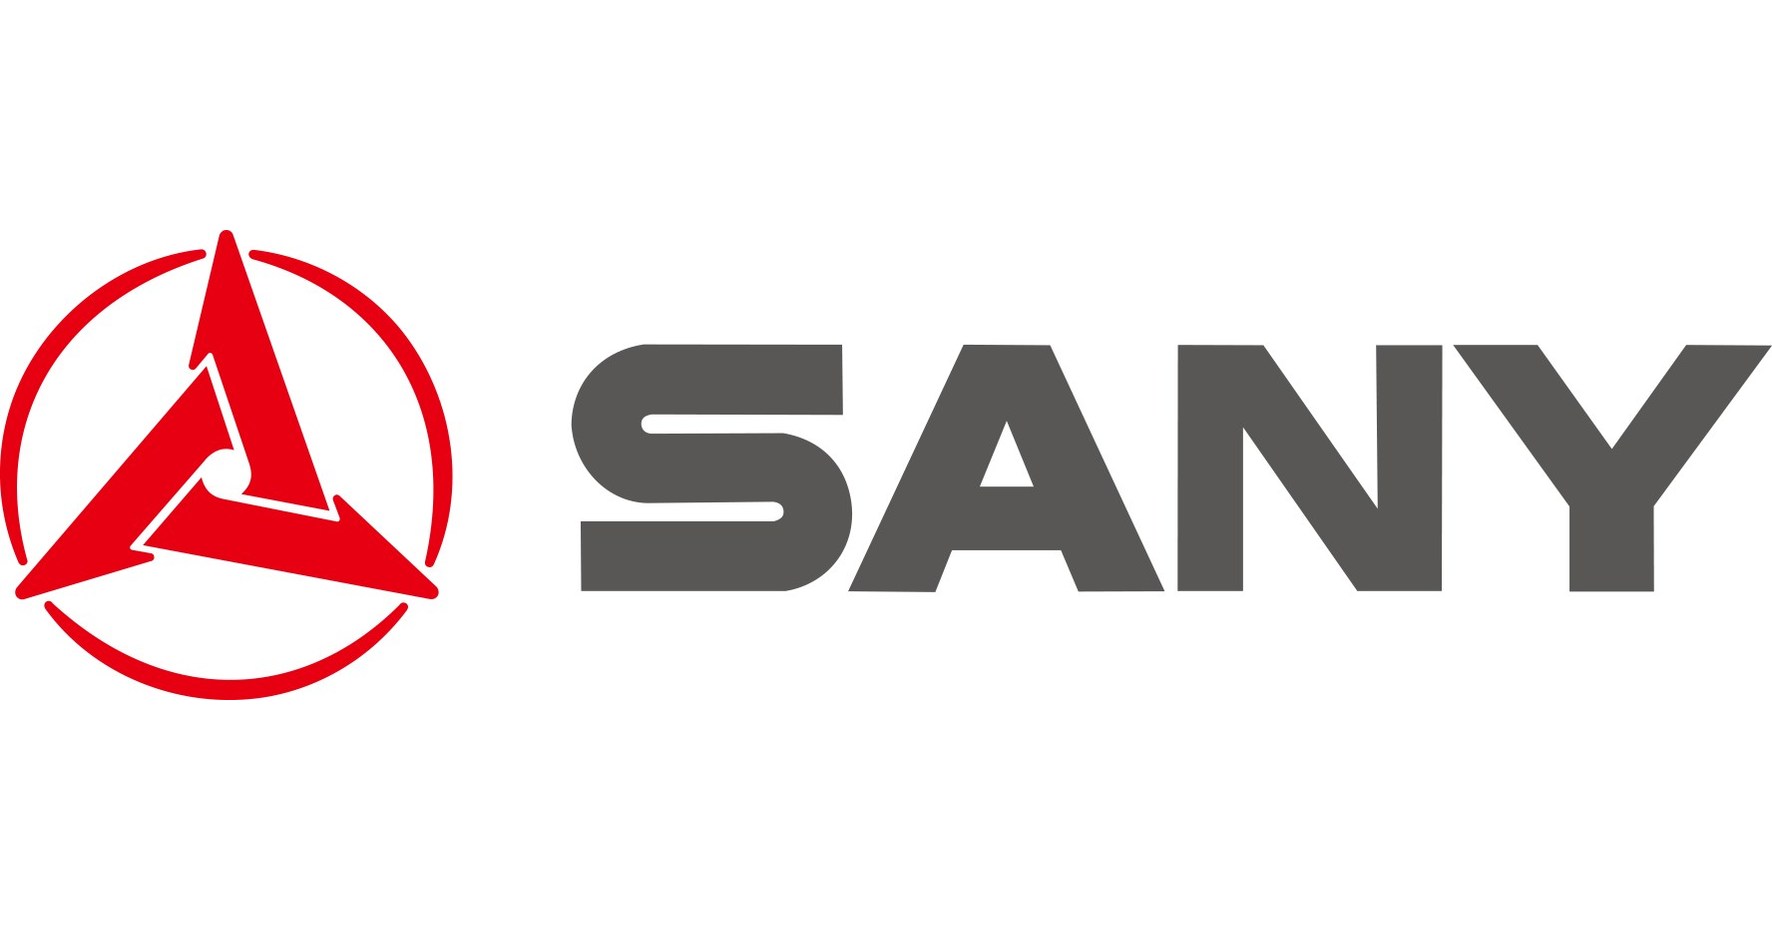 SANY को फोर्ब्स द्वारा 2021 में चीन की सबसे बड़ी भारी उपकरण कंपनी और दुनिया में दूसरा नाम दिया गया है